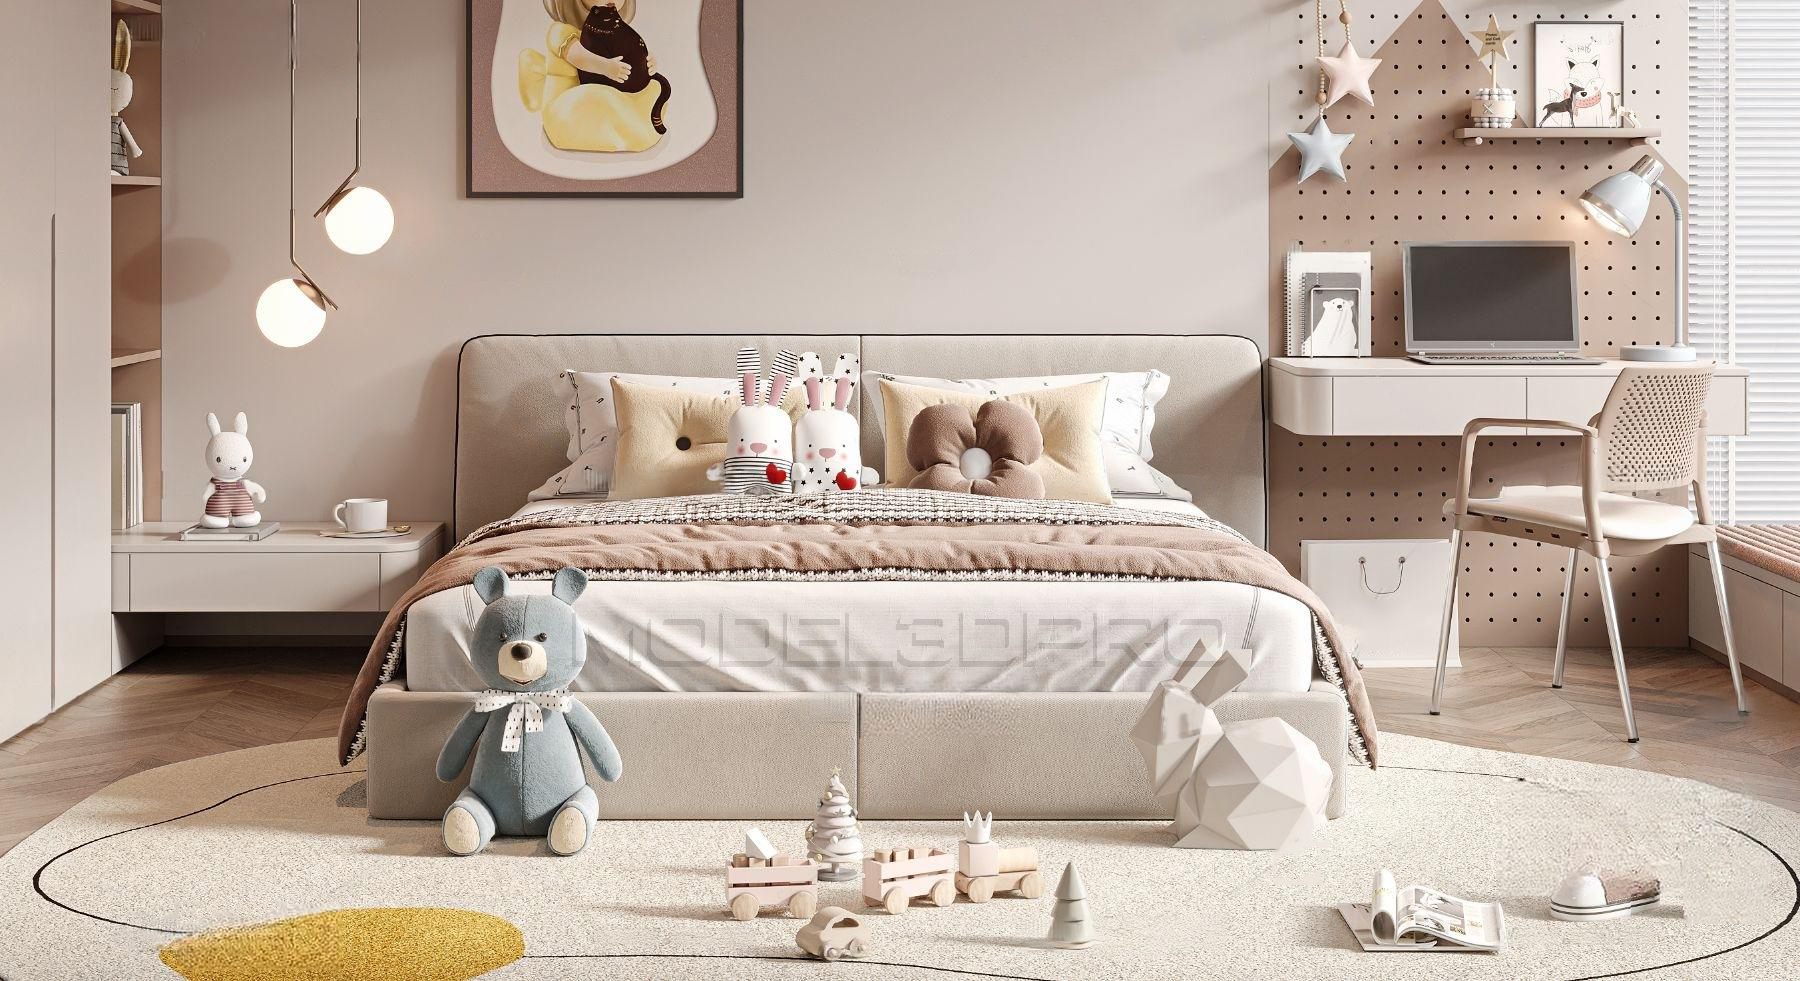 Children'S Bedroom SketchUp Models for Download 8022